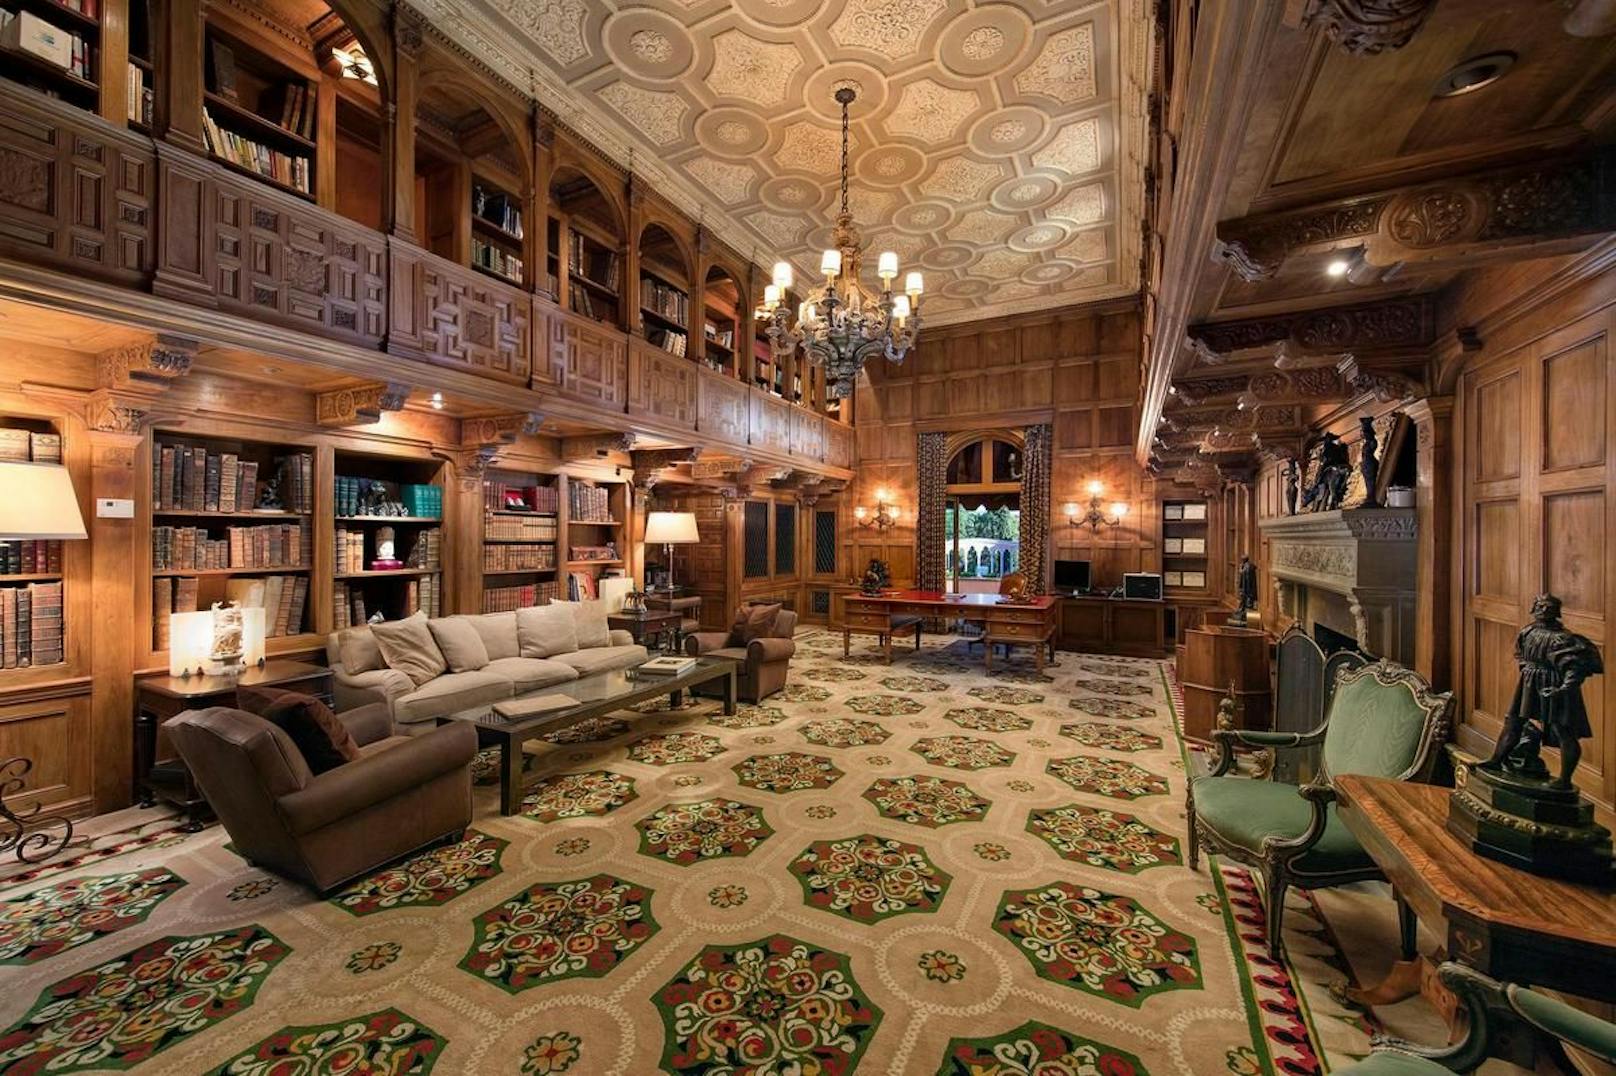 Besonders beeindruckend ist auch die zweistöckige Bibliothek. Der Teppich und die Decke sind hier im gleichen Muster gehalten.